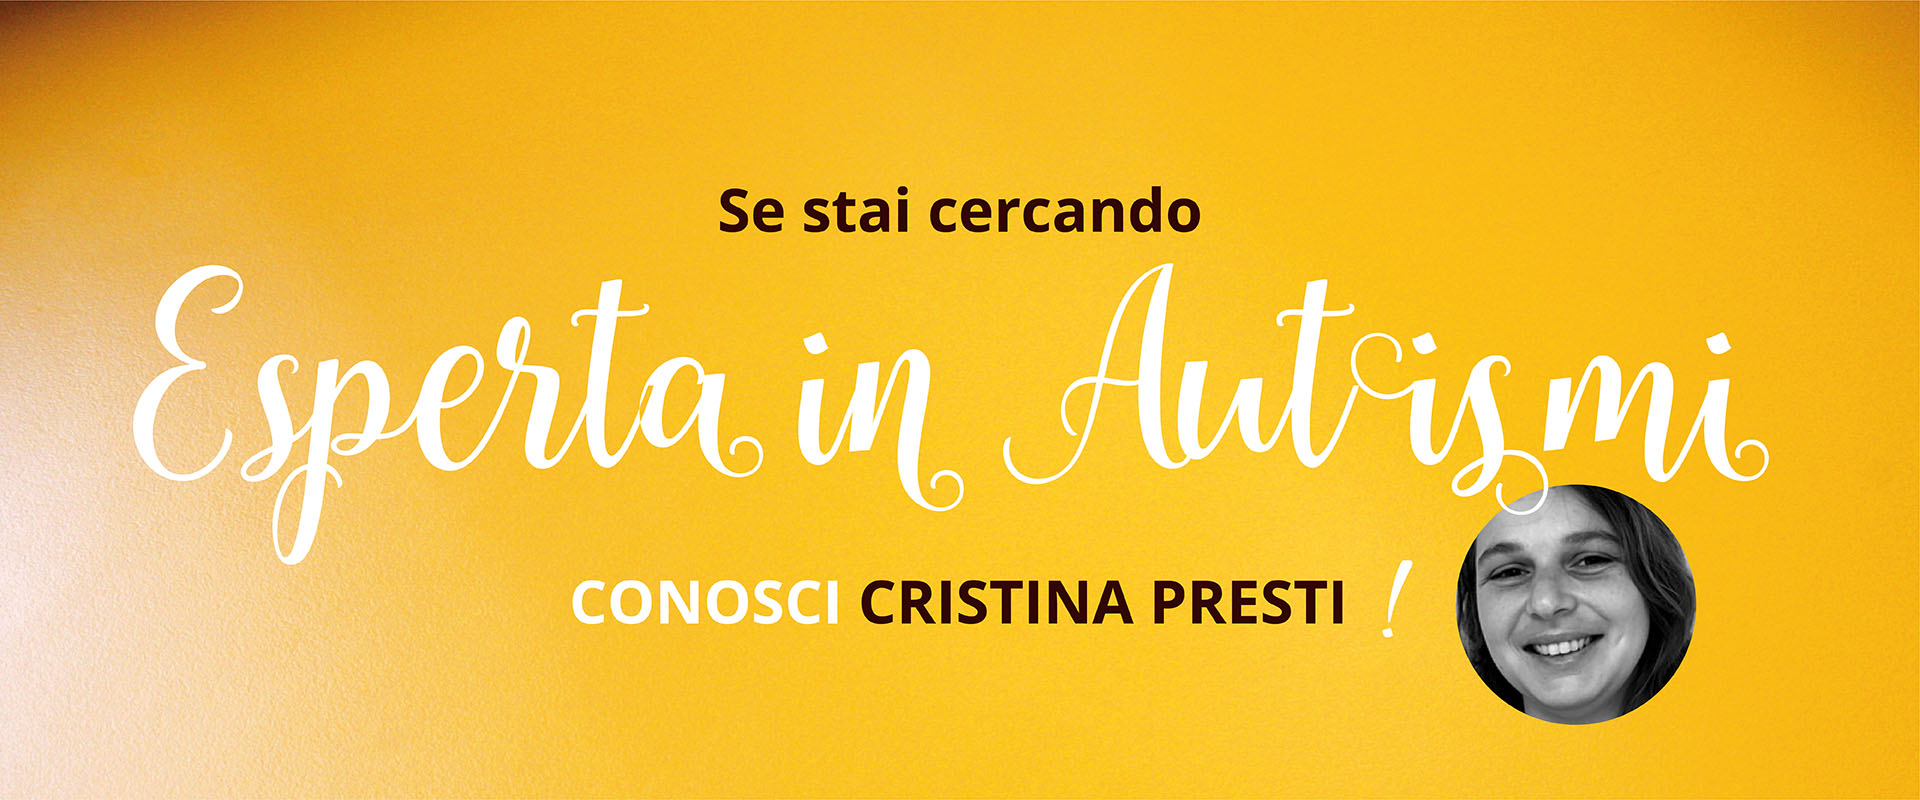 Spazio per me, Cristina Presti, Esperta in Autismi.